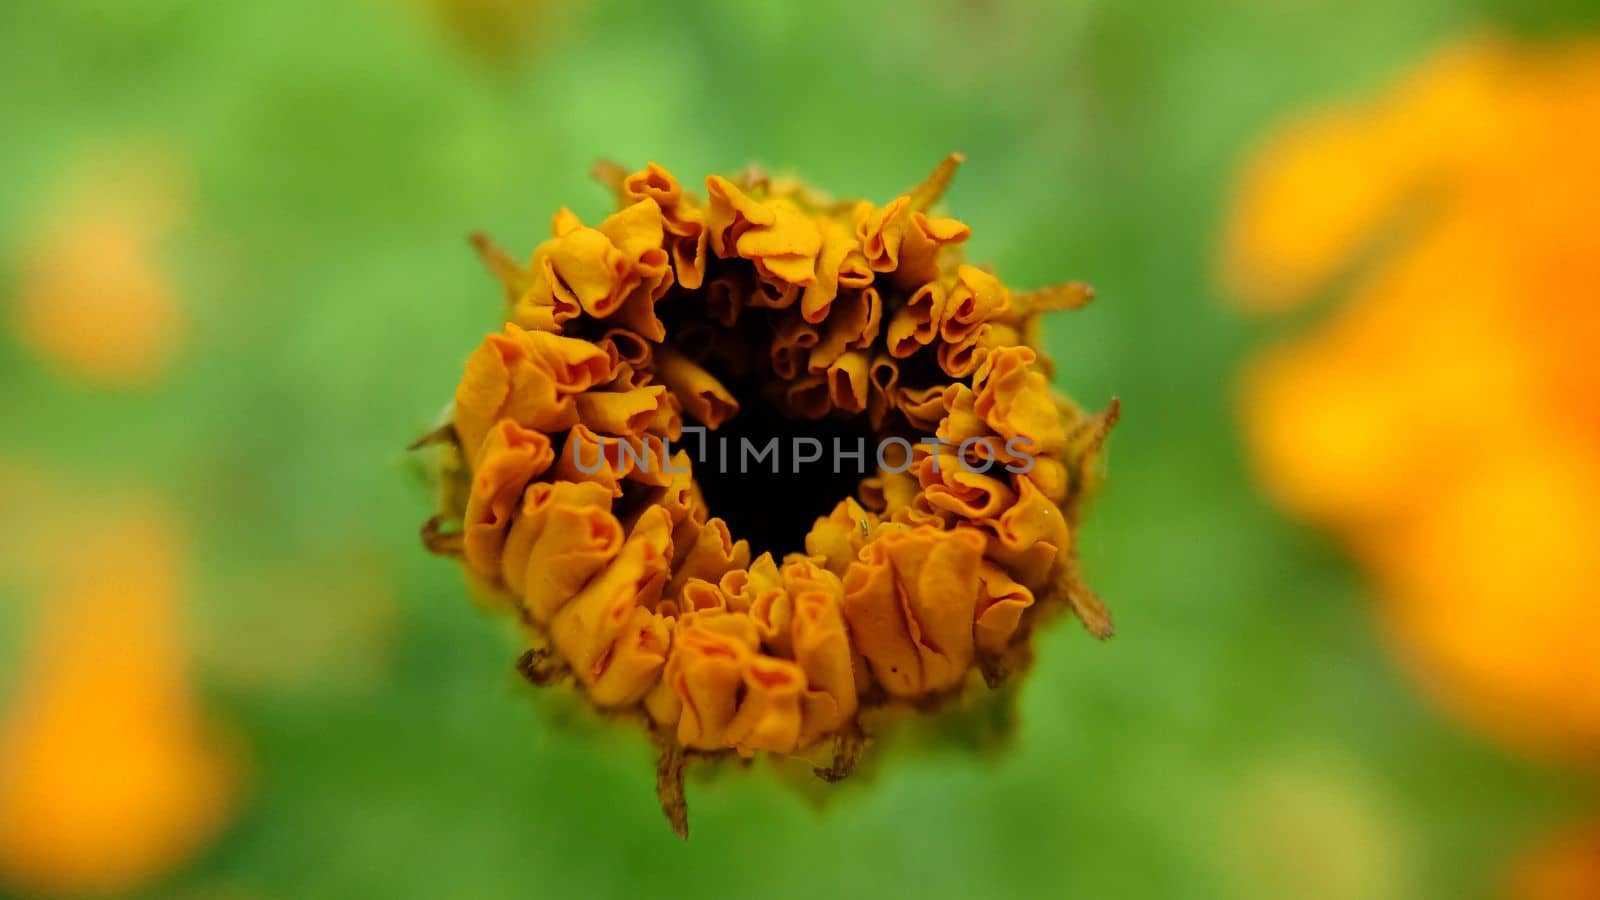 Unopened orange calendula flower on a grassy background by Mastak80